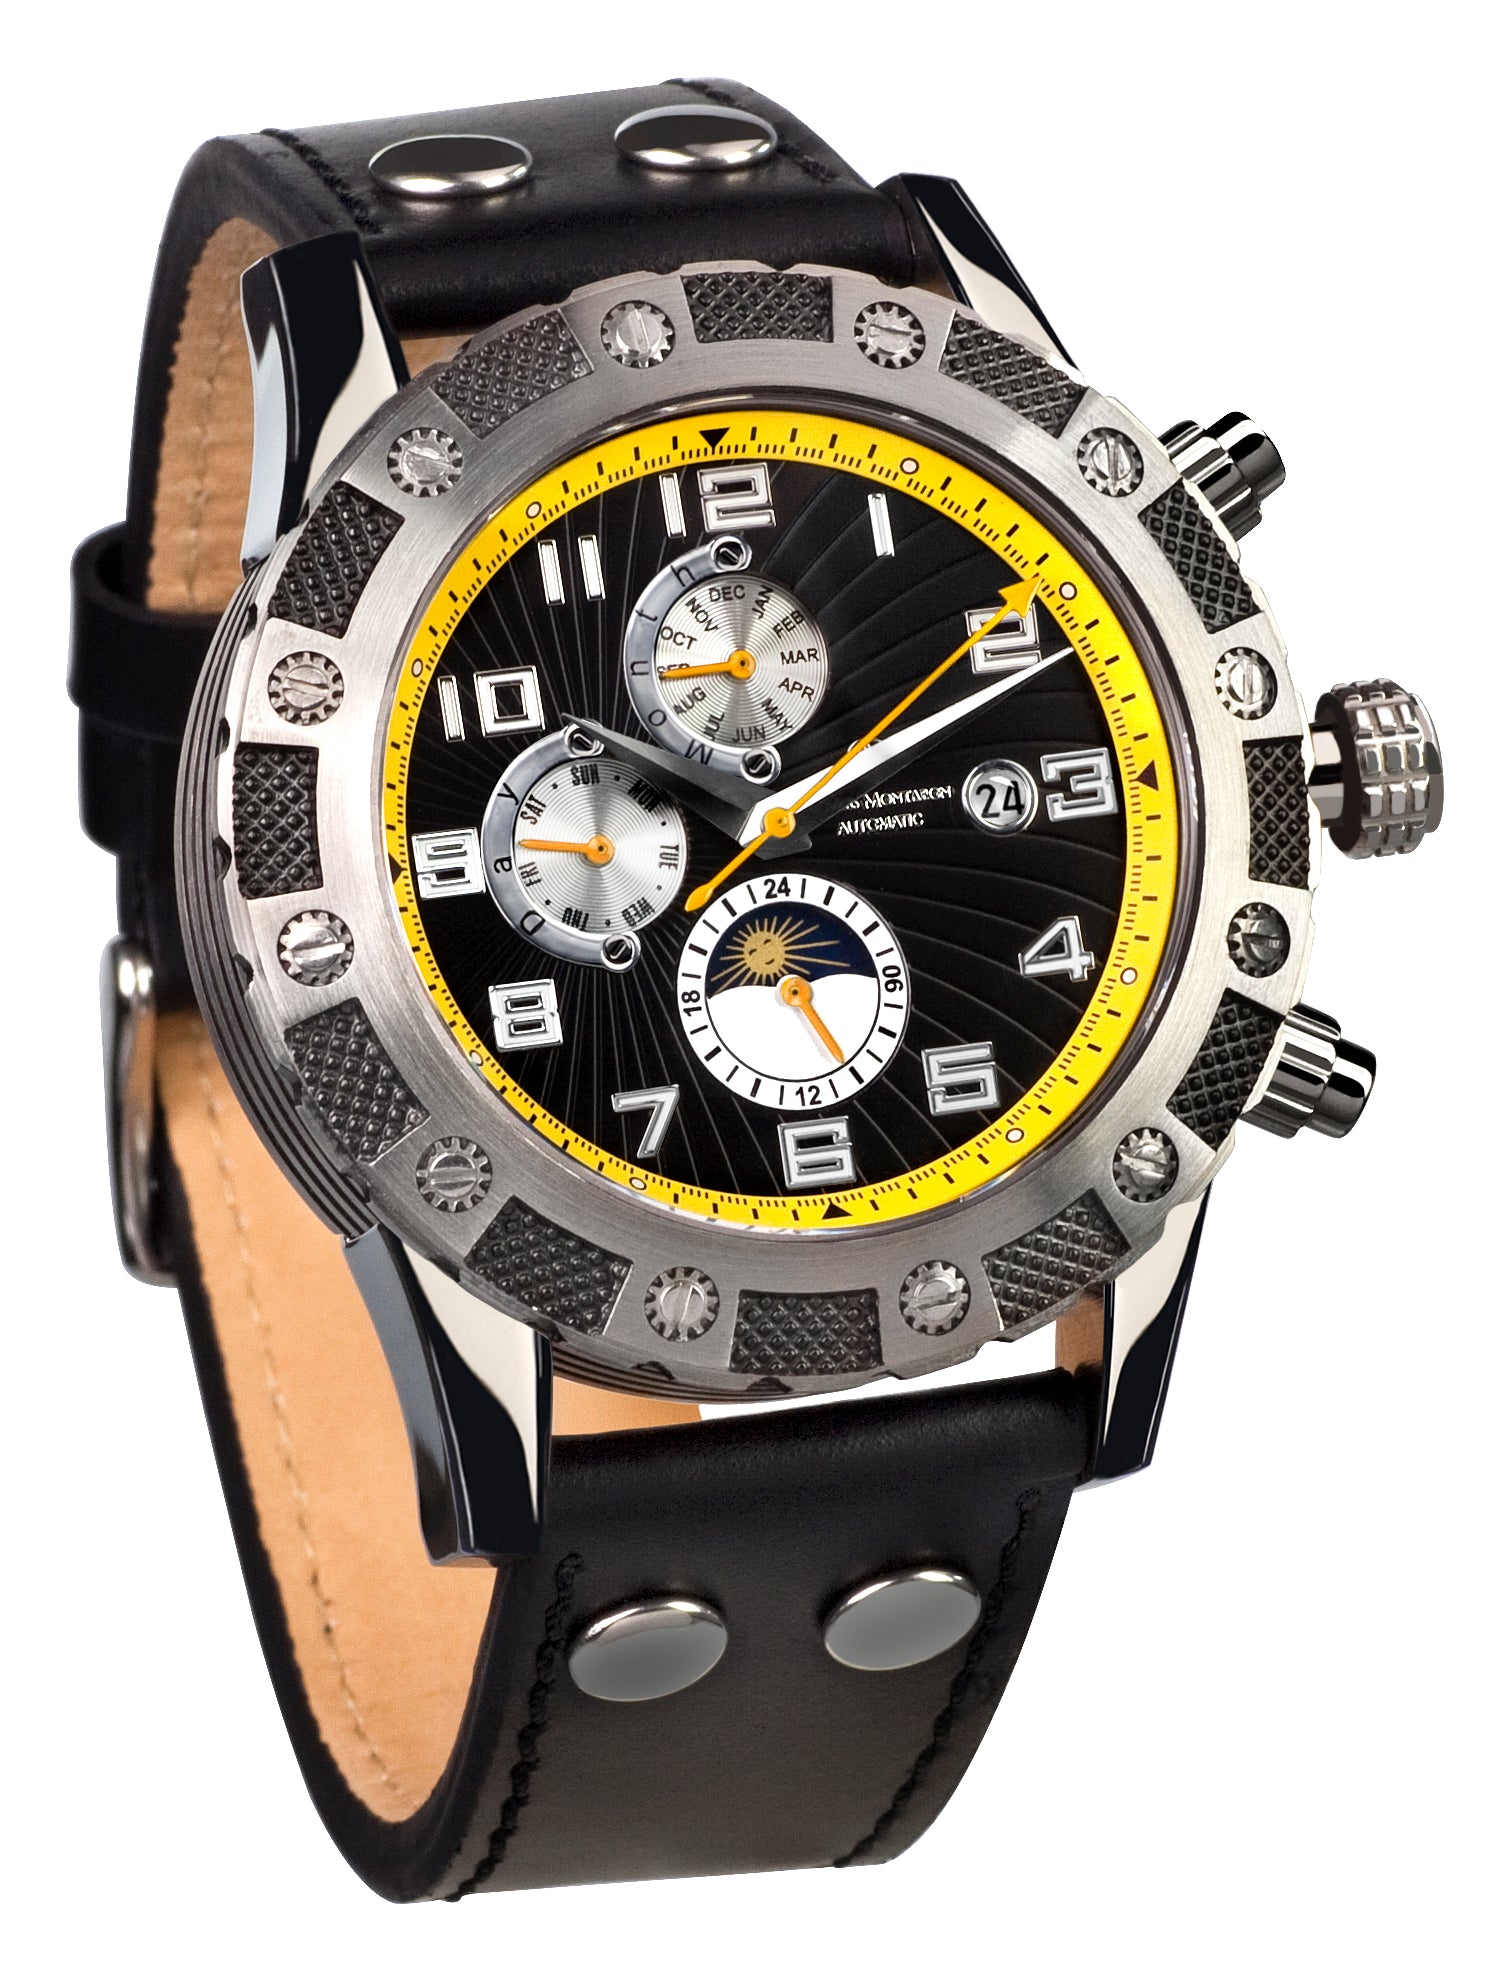 Automatic watches — Le Général — Mathis Montabon — gelb